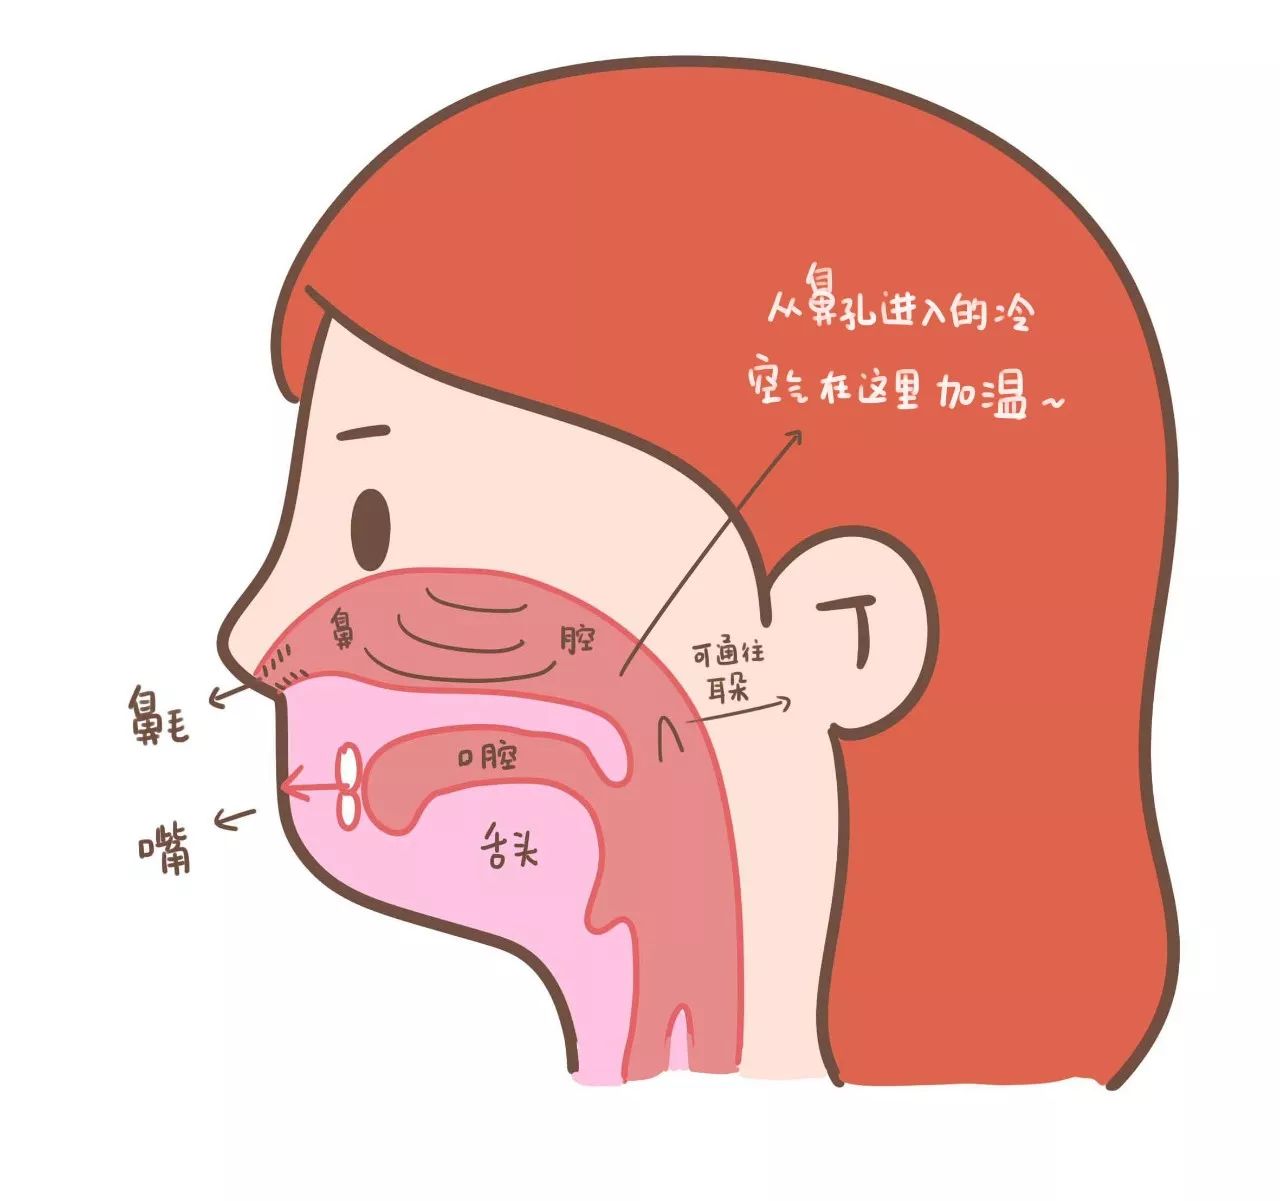 正常人的喉咙后壁图片-图库-五毛网